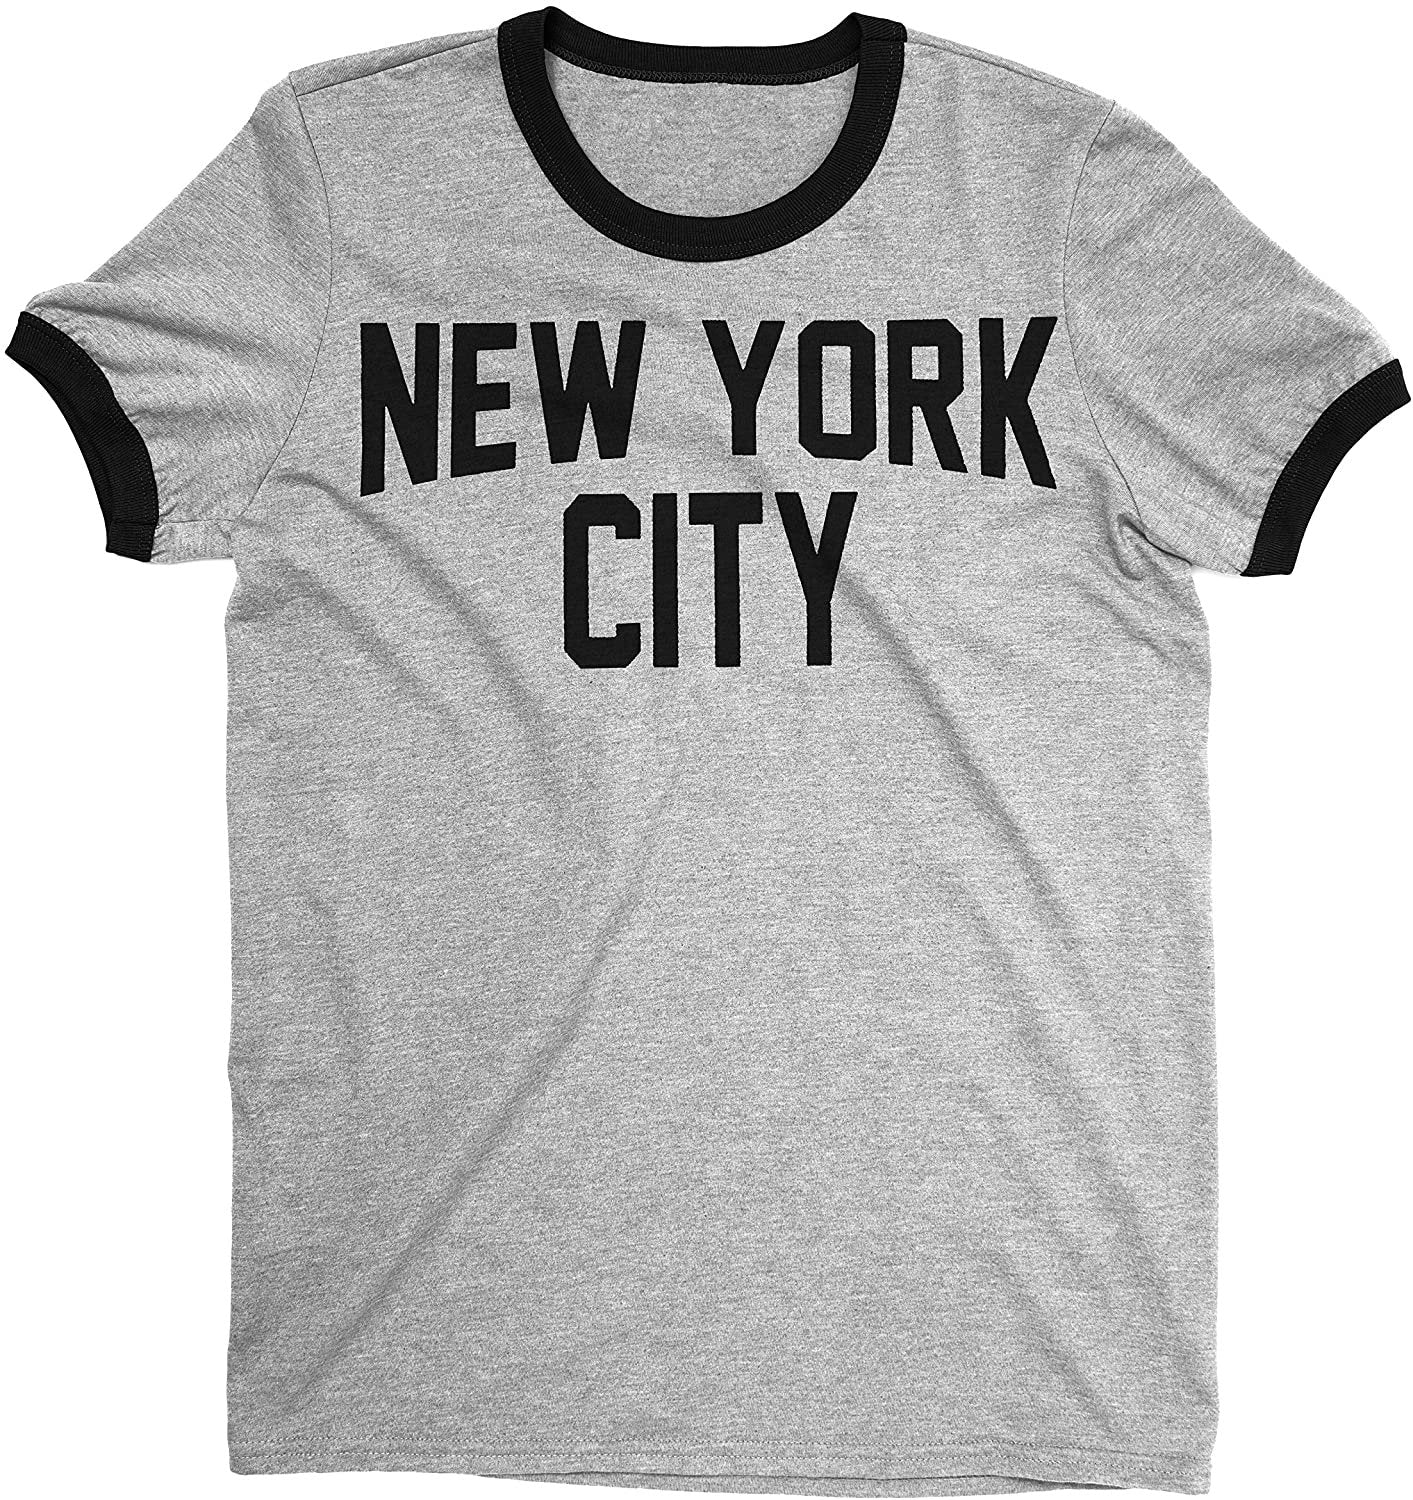 Men's New York City John Lennon Ringer Tee T-Shirt (Gray/Black, Regular Print)